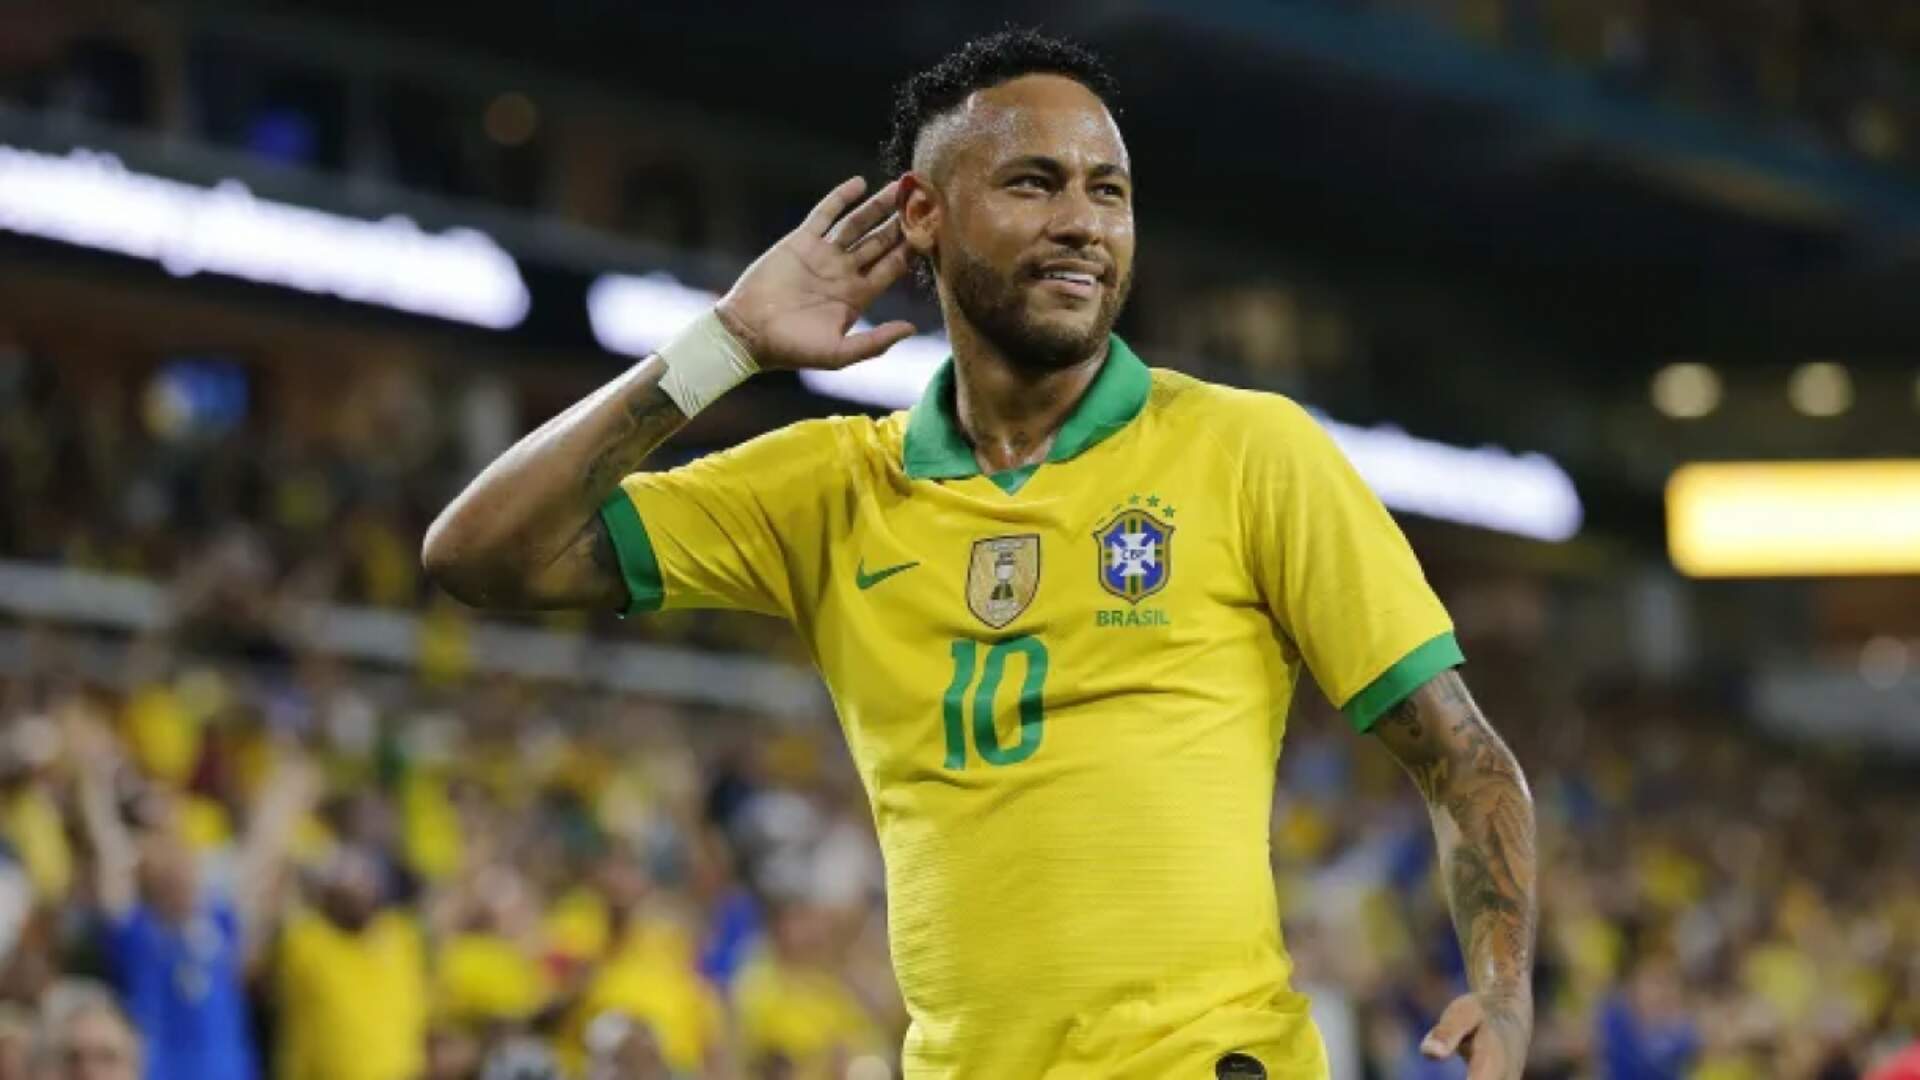 Copa do Mundo 2022: Brasil goleia a Coreia do Sul e avança para as quartas de final - Metropolitana FM